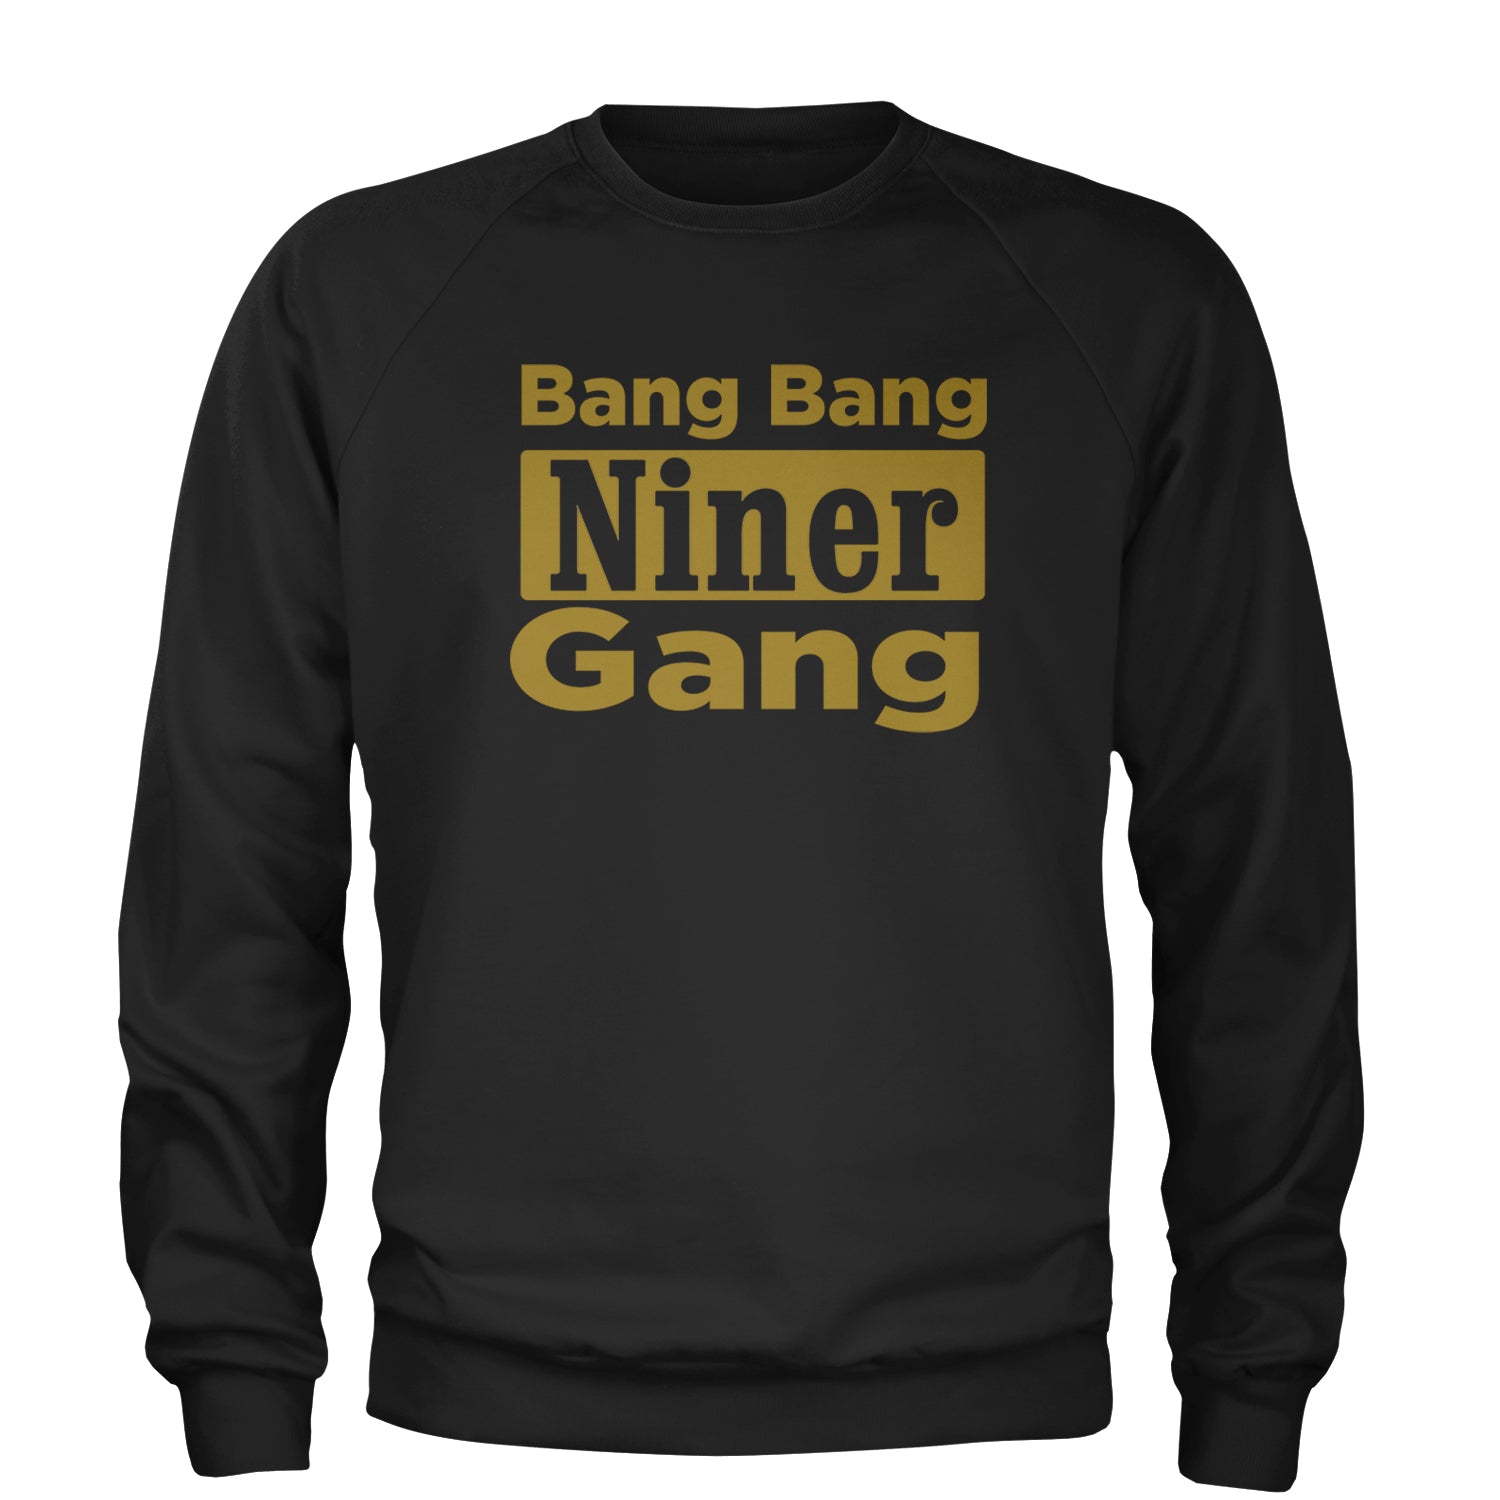 Bang Bang Niner Gang San Francisco Adult Crewneck Sweatshirt